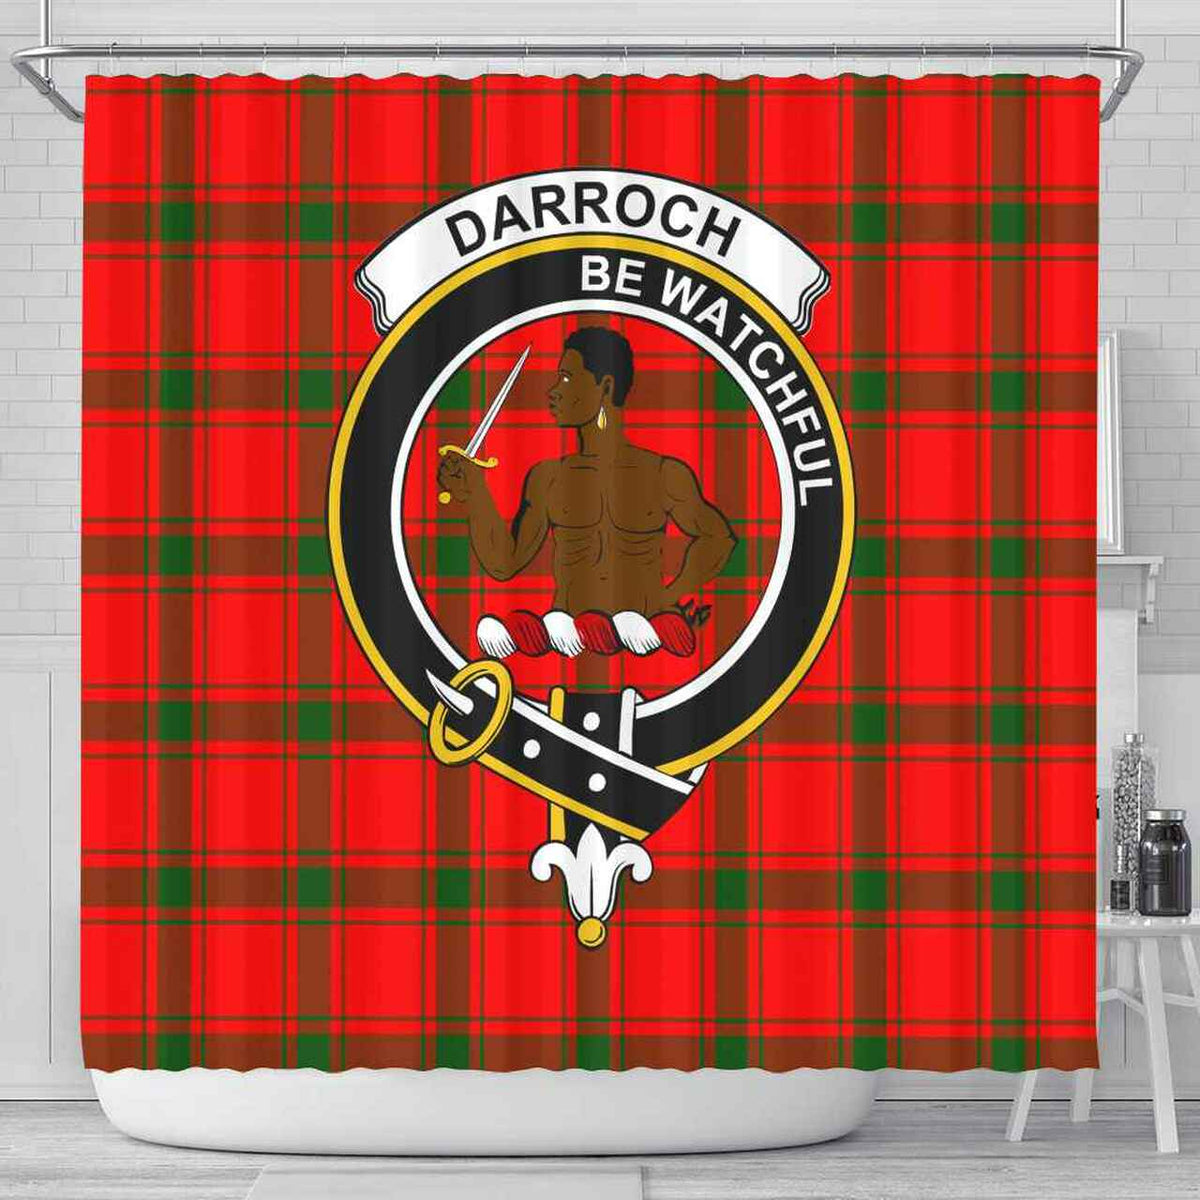 Darroch (Gourock) Tartan Crest Shower Curtain